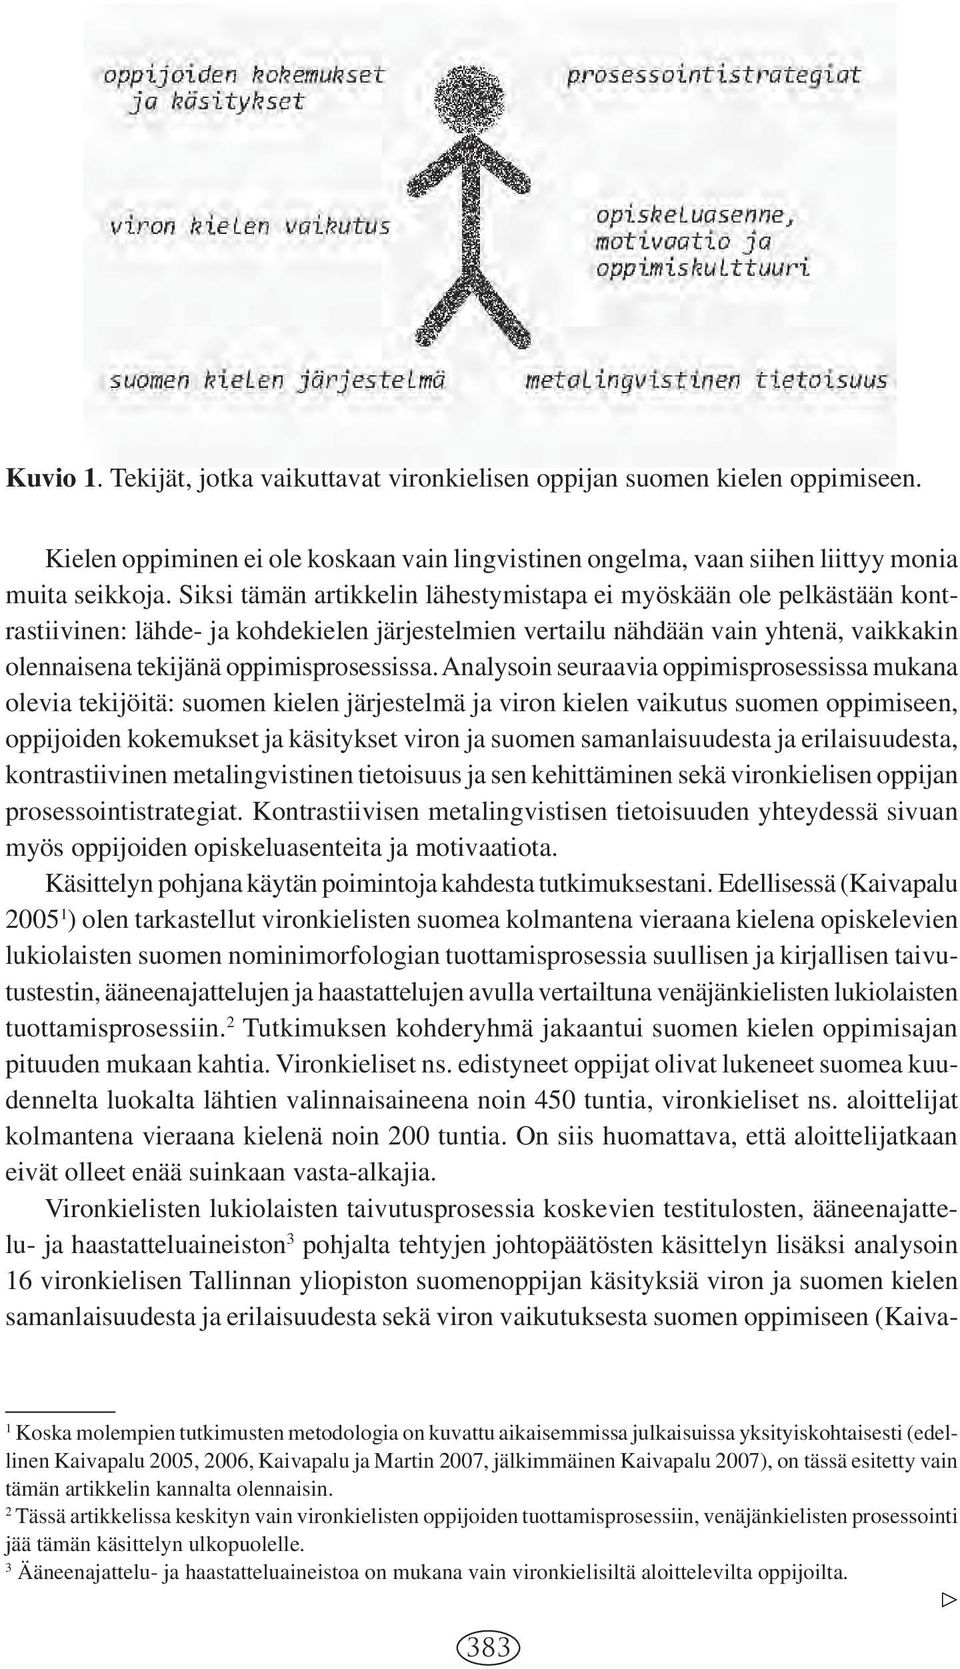 Analysoin seuraavia oppimisprosessissa mukana olevia tekijöitä: suomen kielen järjestelmä ja viron kielen vaikutus suomen oppimiseen, oppijoiden kokemukset ja käsitykset viron ja suomen